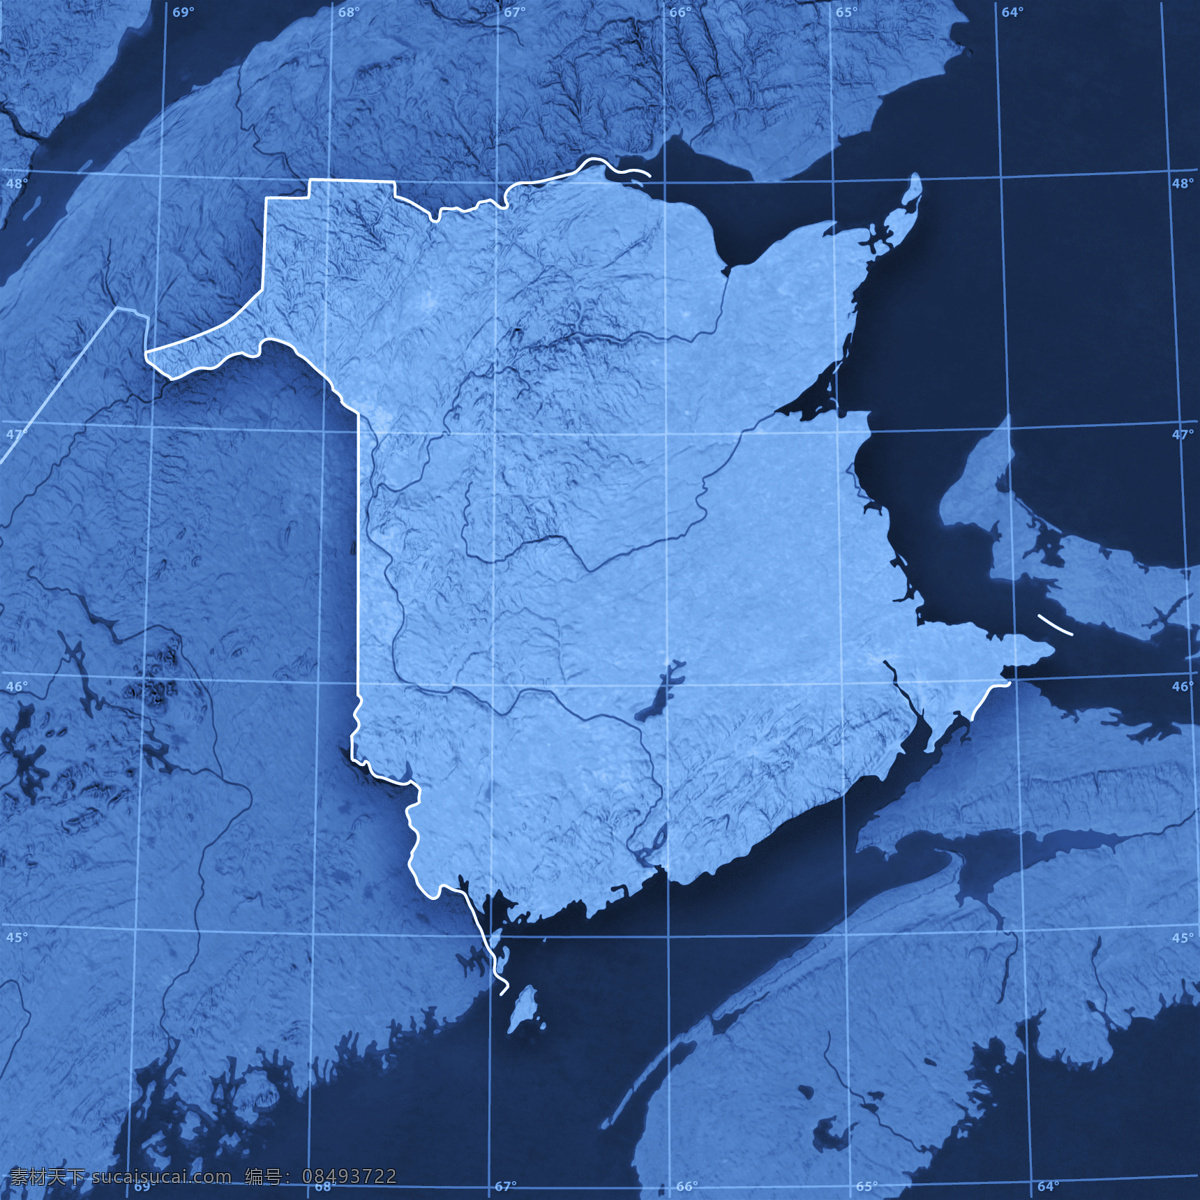 经纬地图背景 地图 蓝色地图 地图模板 经线 纬线 经度 纬度 办公学习 其他类别 生活百科